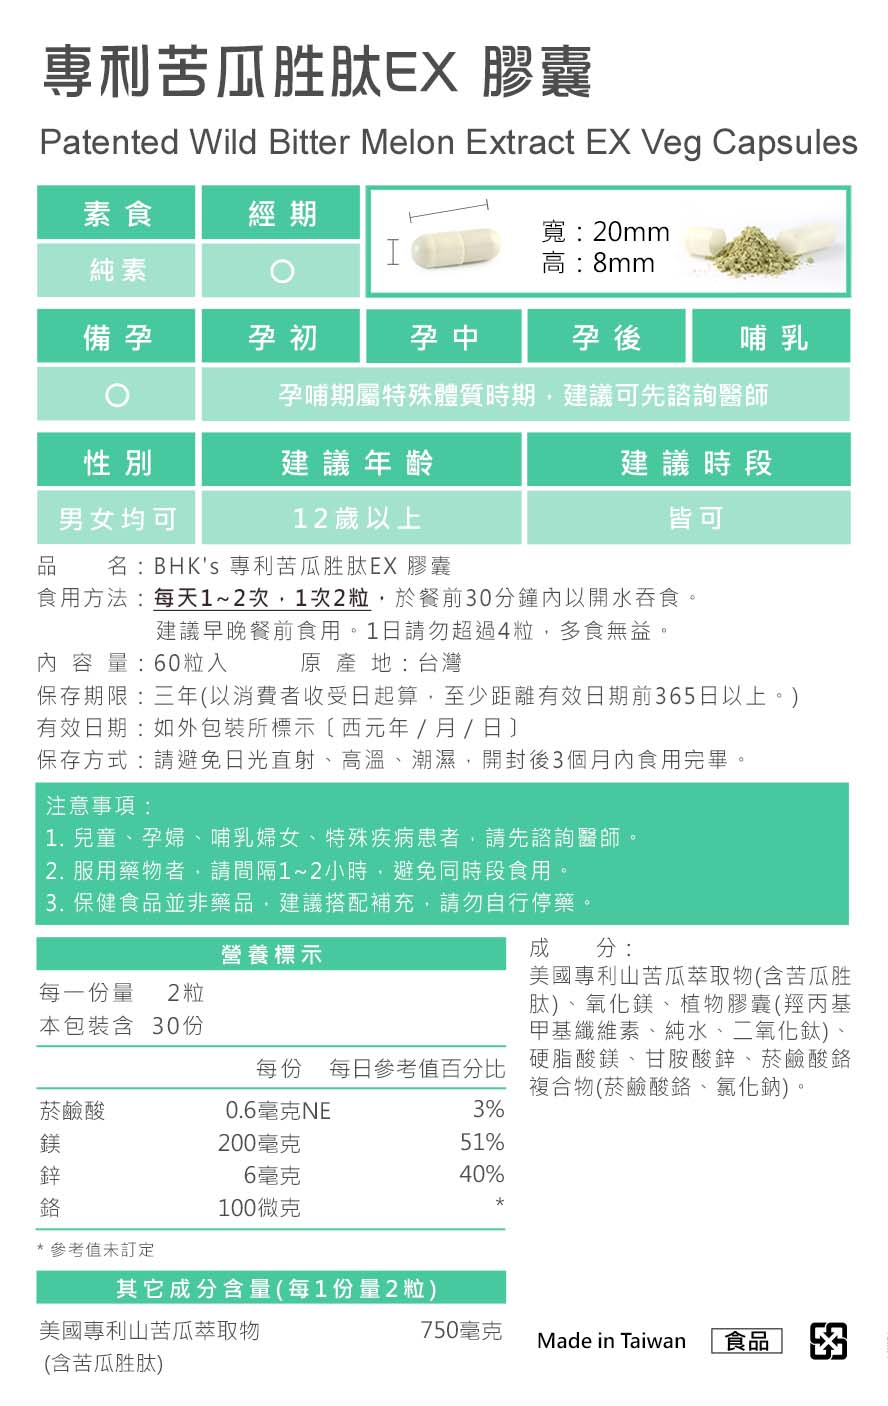 BHK's专利苦瓜胜肽EX，台湾制造、MIT台湾品牌，通过安全检验合格、安全无虑。